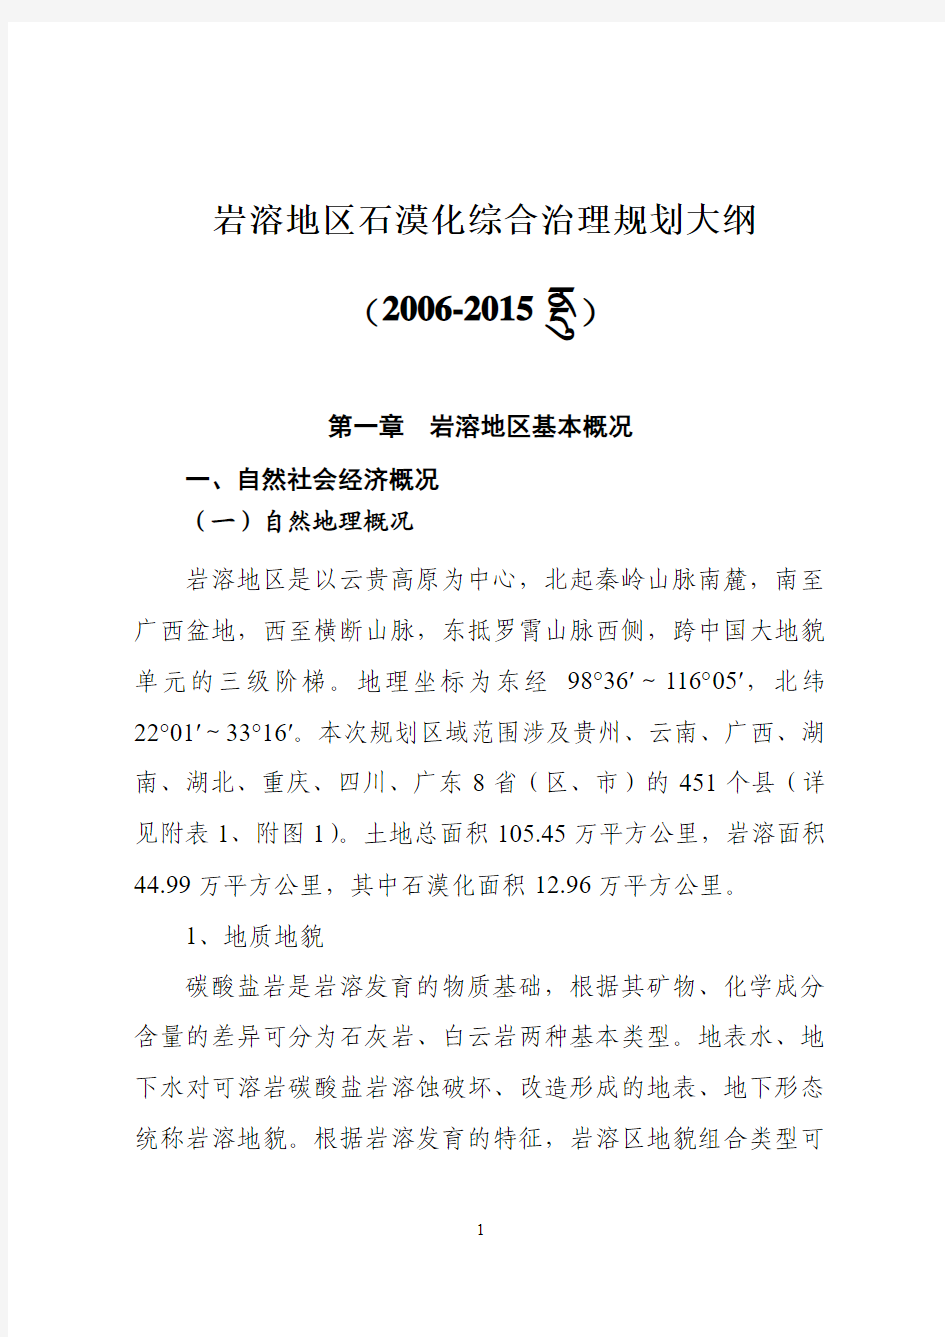 岩溶地区石漠化综合治理规划大纲-中华人民共和国国家发展和改革